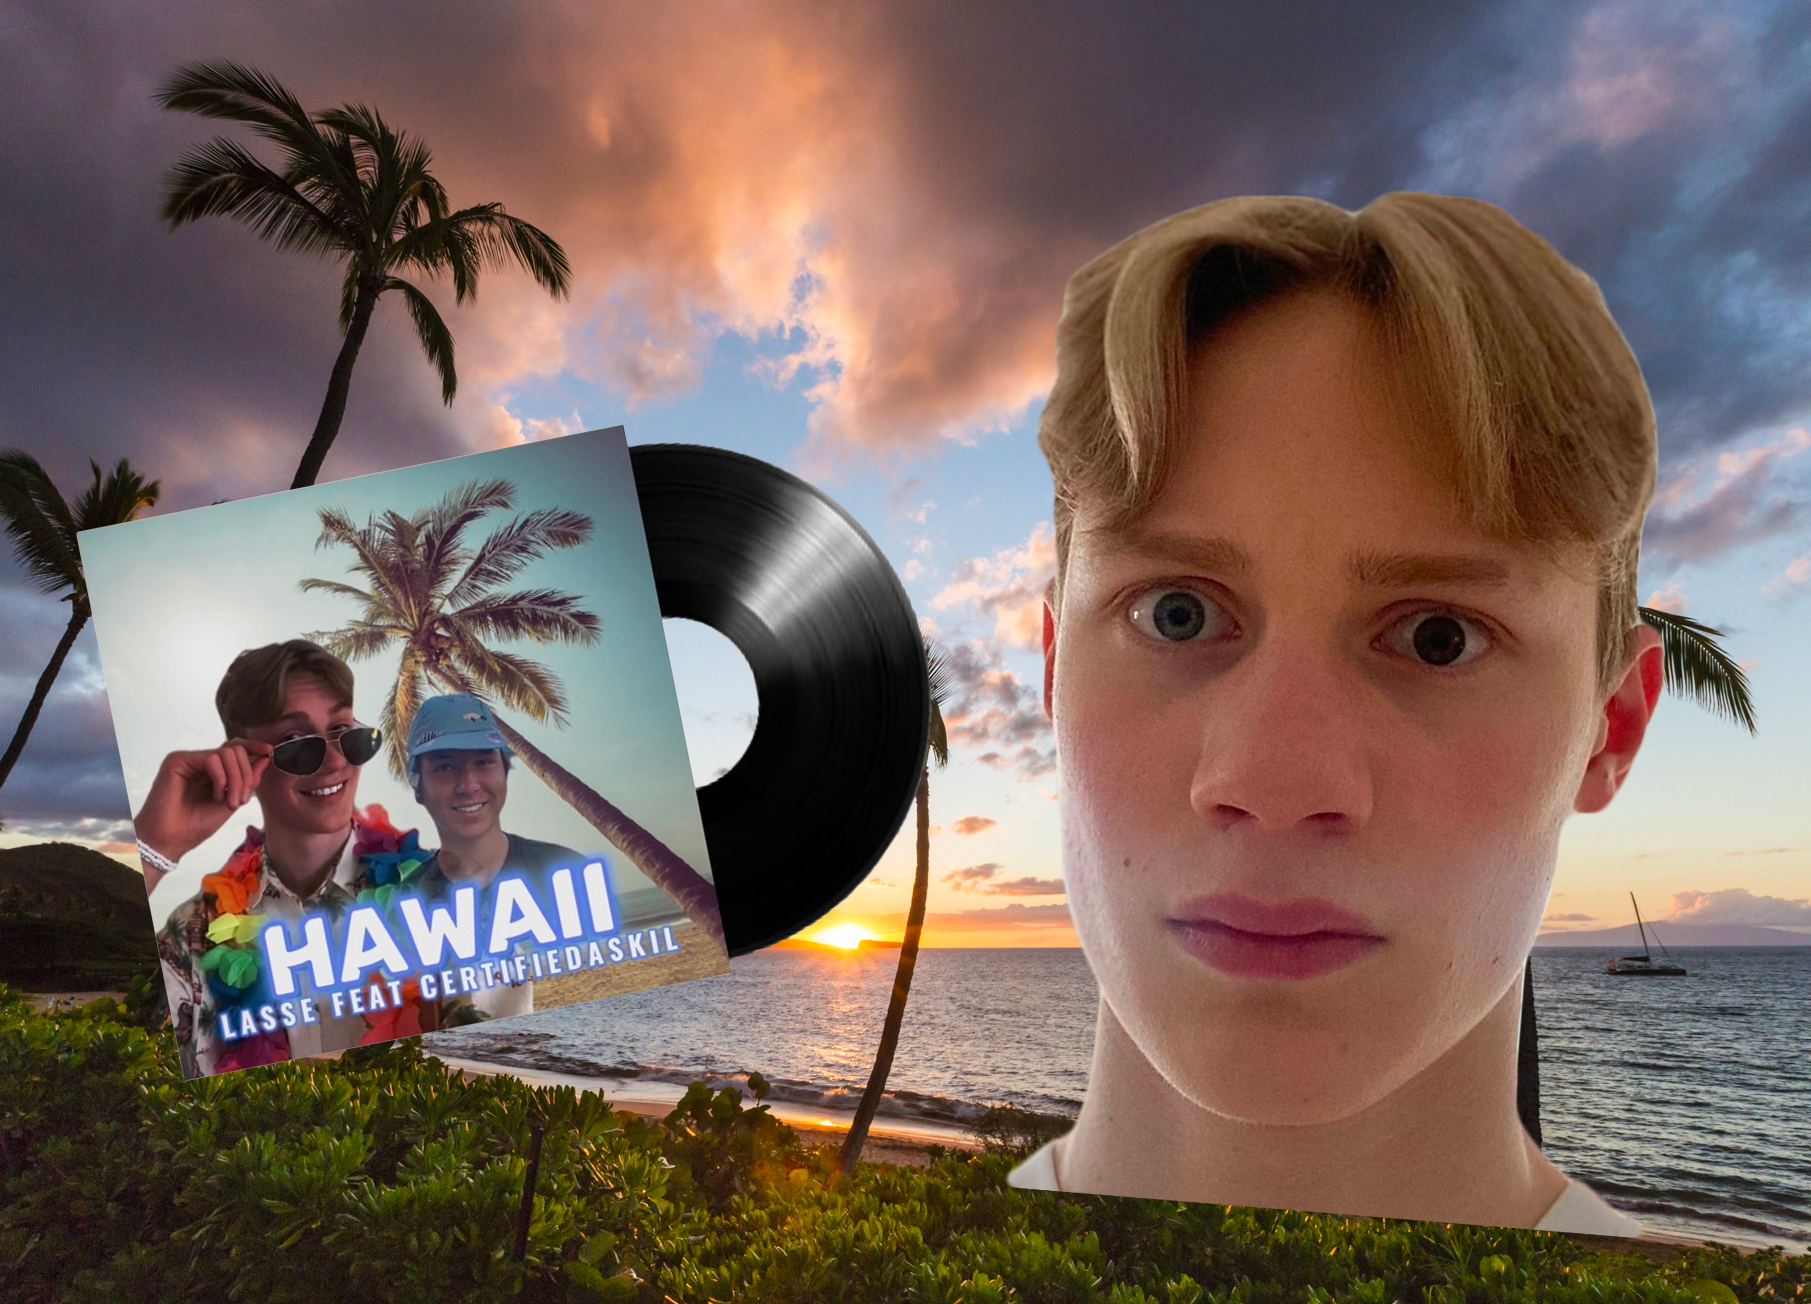 Lasse Sælevik feat. Certifiedaskil med låten «Hawaii». (Kollasj: Subjekt.)